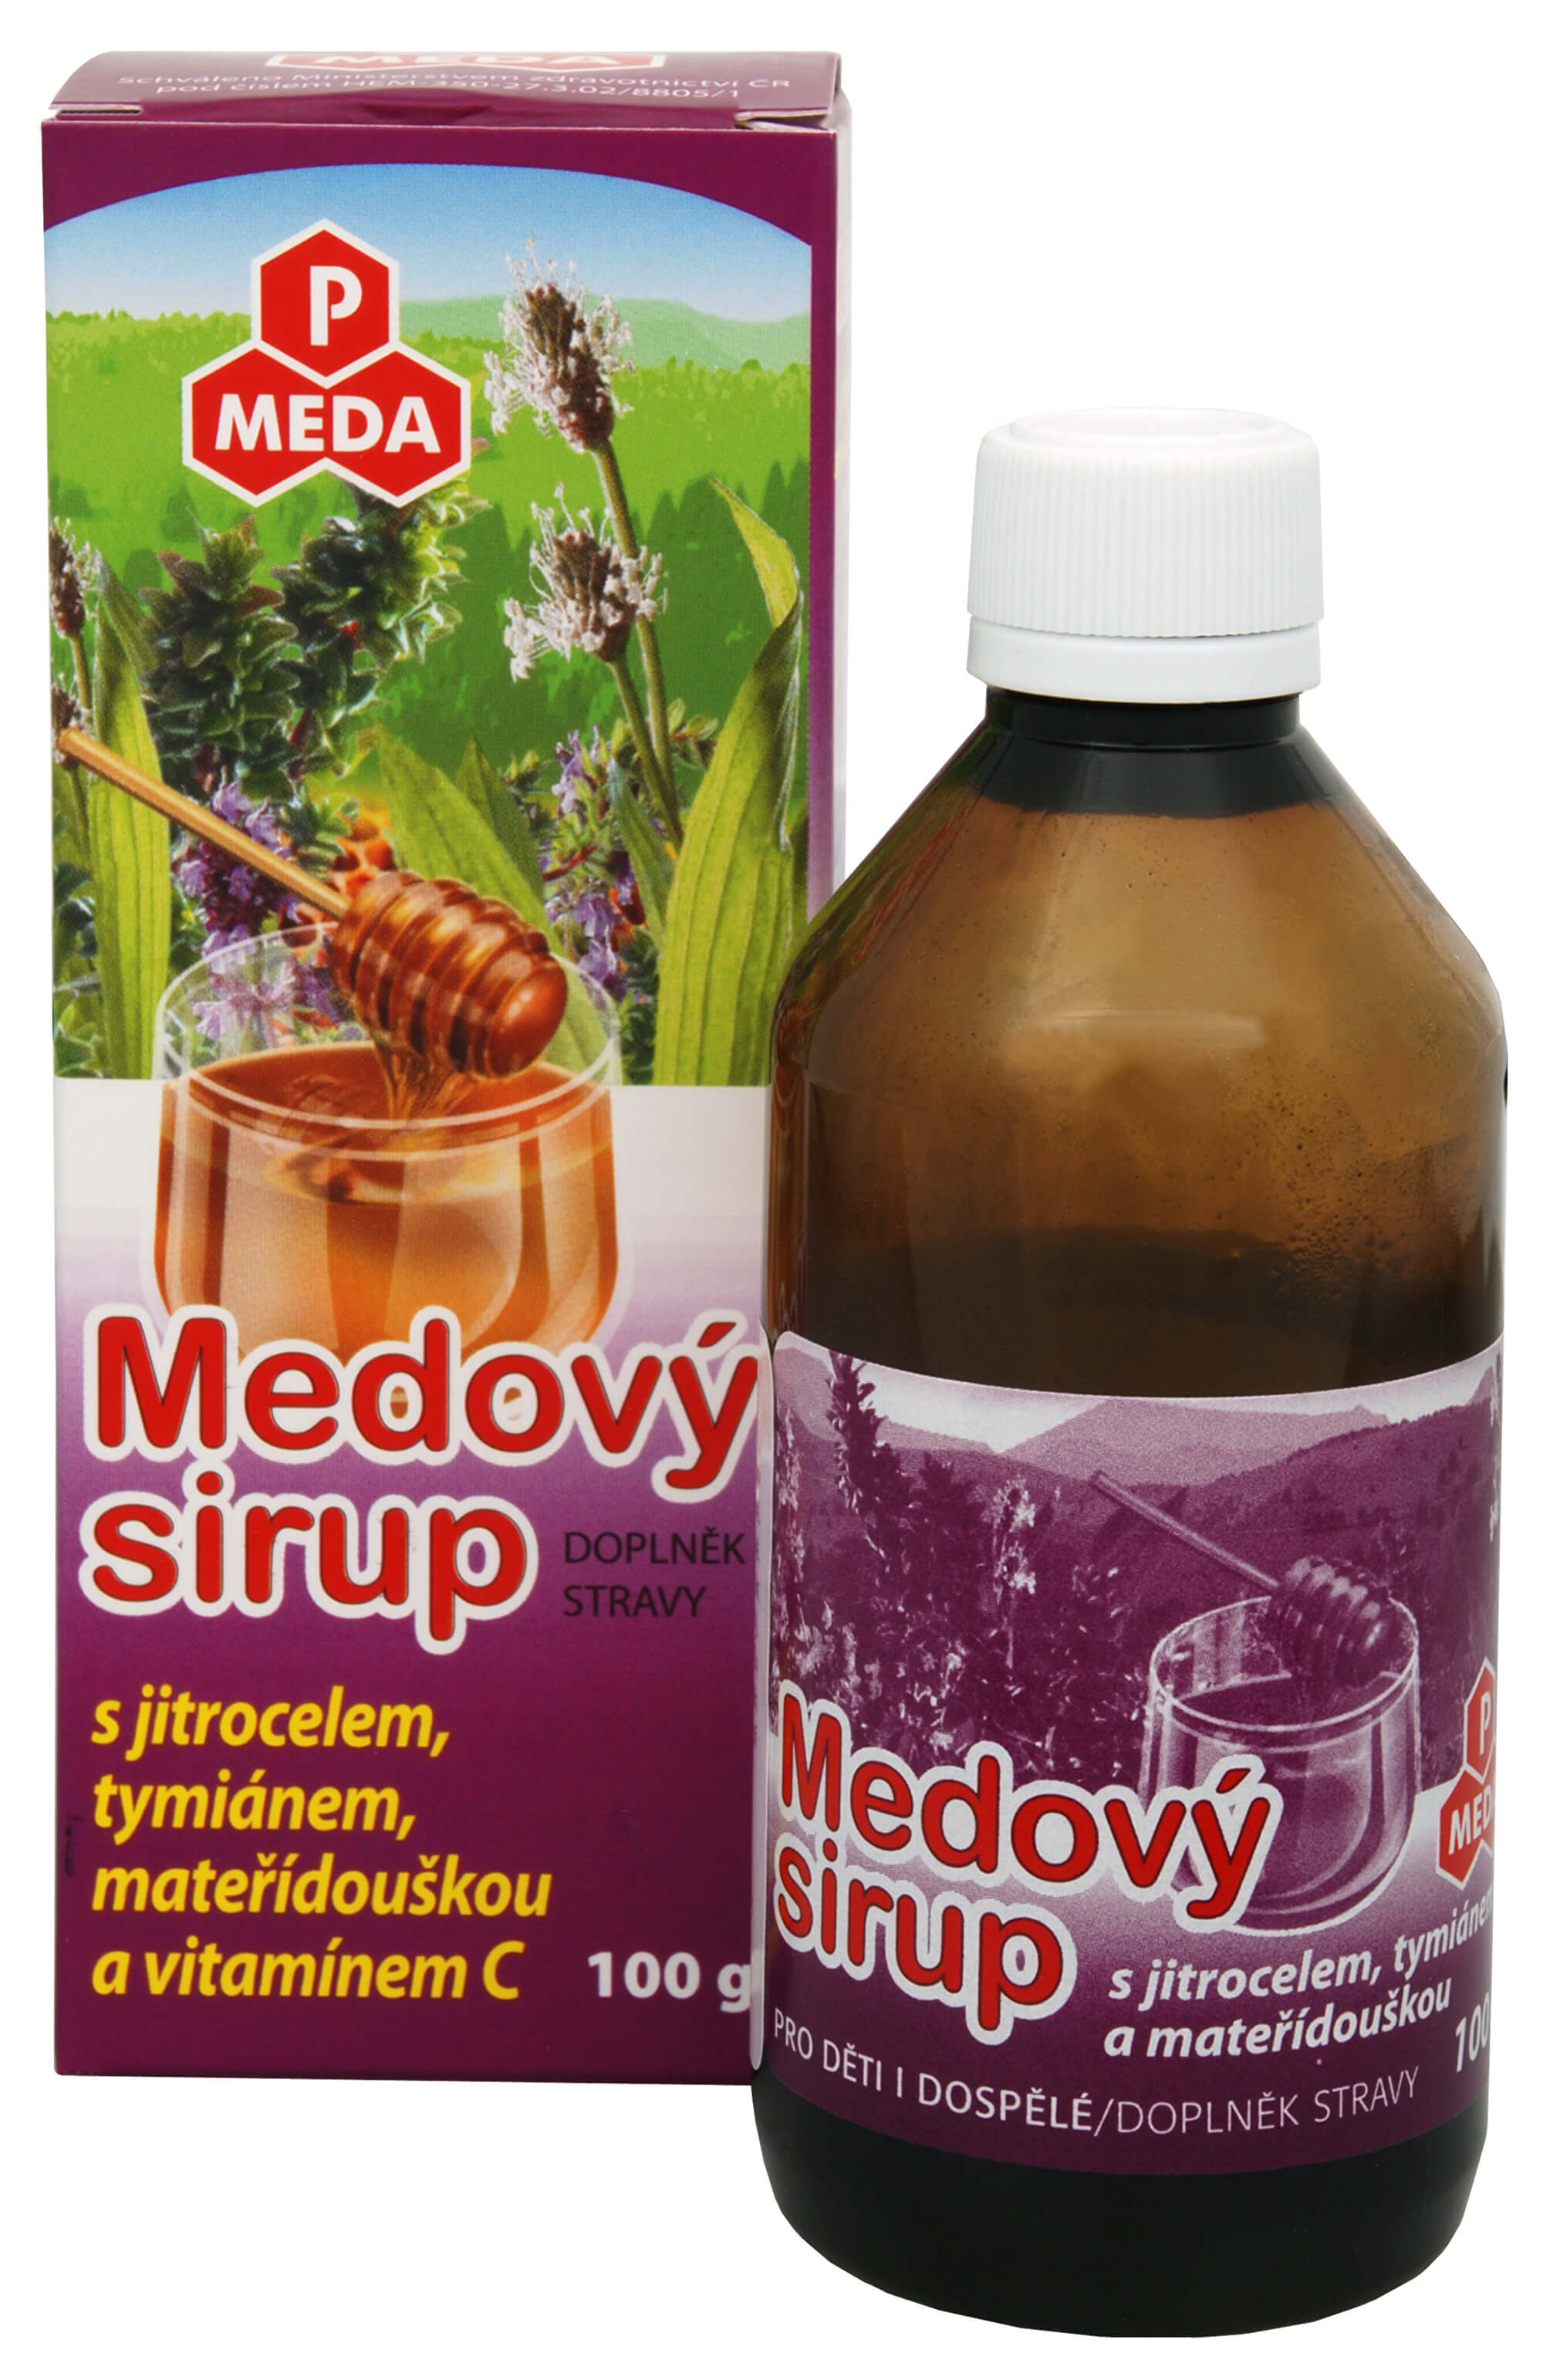 Zobrazit detail výrobku Purus Meda PM Medový sirup s jitrocelem, tymiánem, mateřídouškou a vitamínem C 100 g + 2 měsíce na vrácení zboží